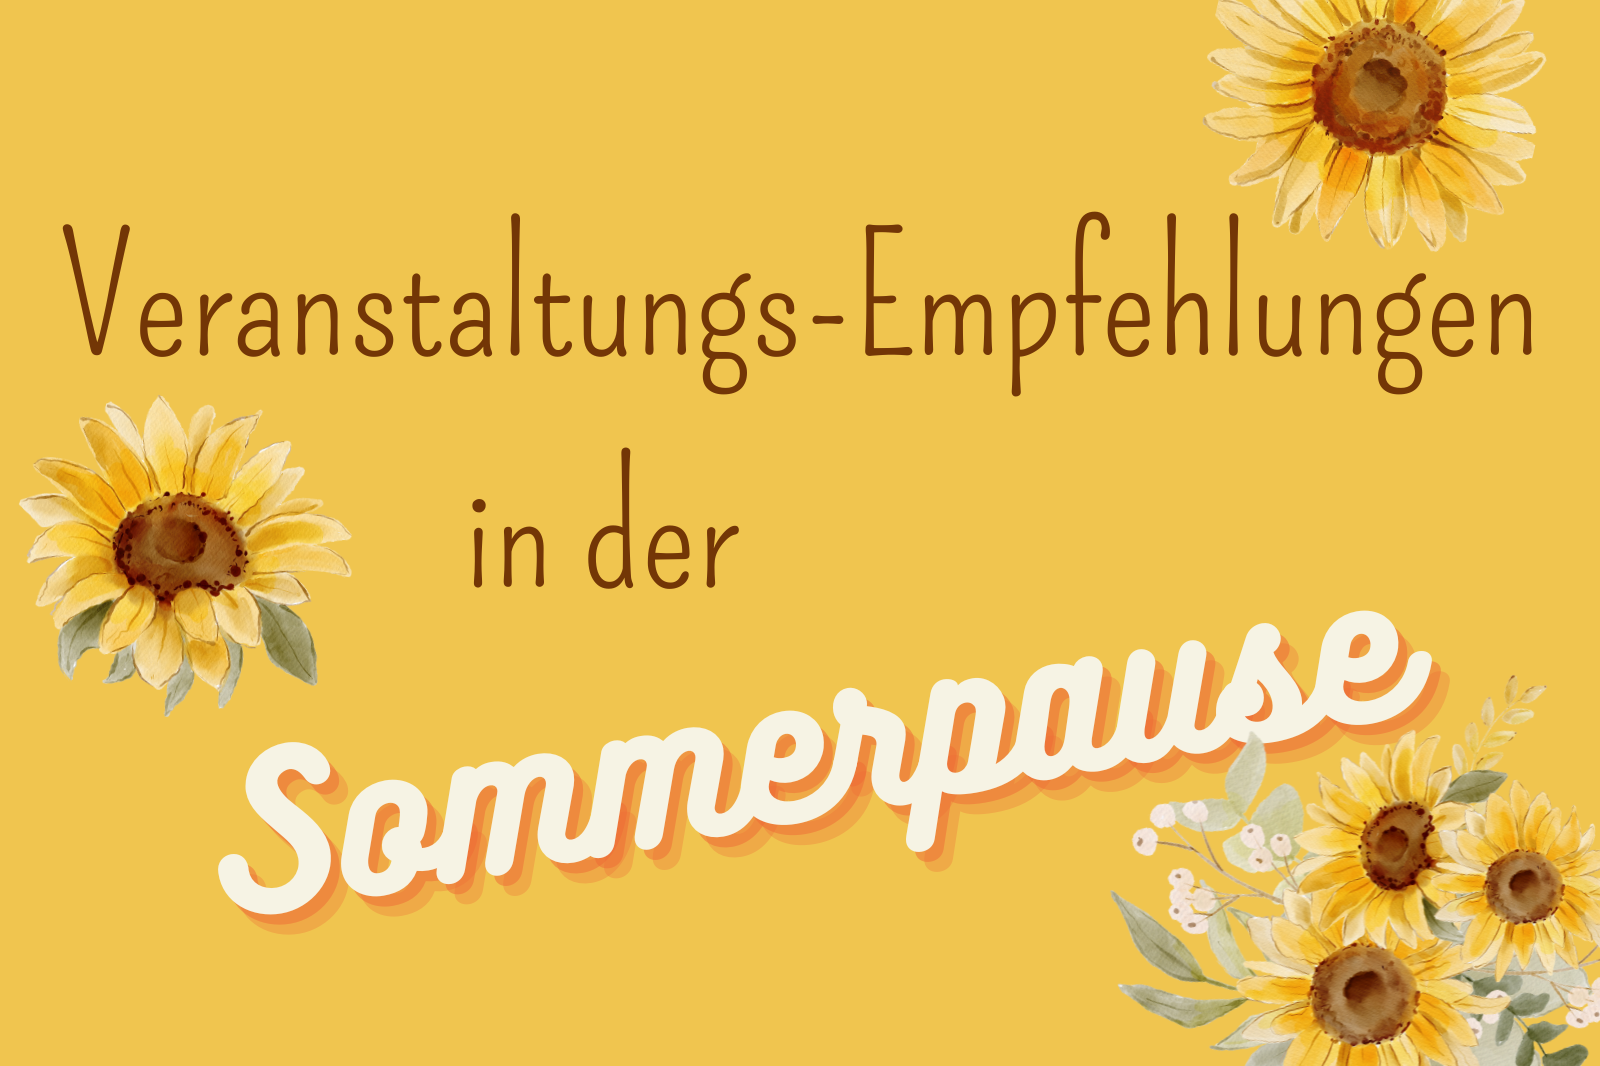 Text: Veranstaltungs-Empfehlungen in der Sommerpause, dahinter gelber Hintergrund, um den Text sind mehrere gemalte Sonnenblumen zu sehen